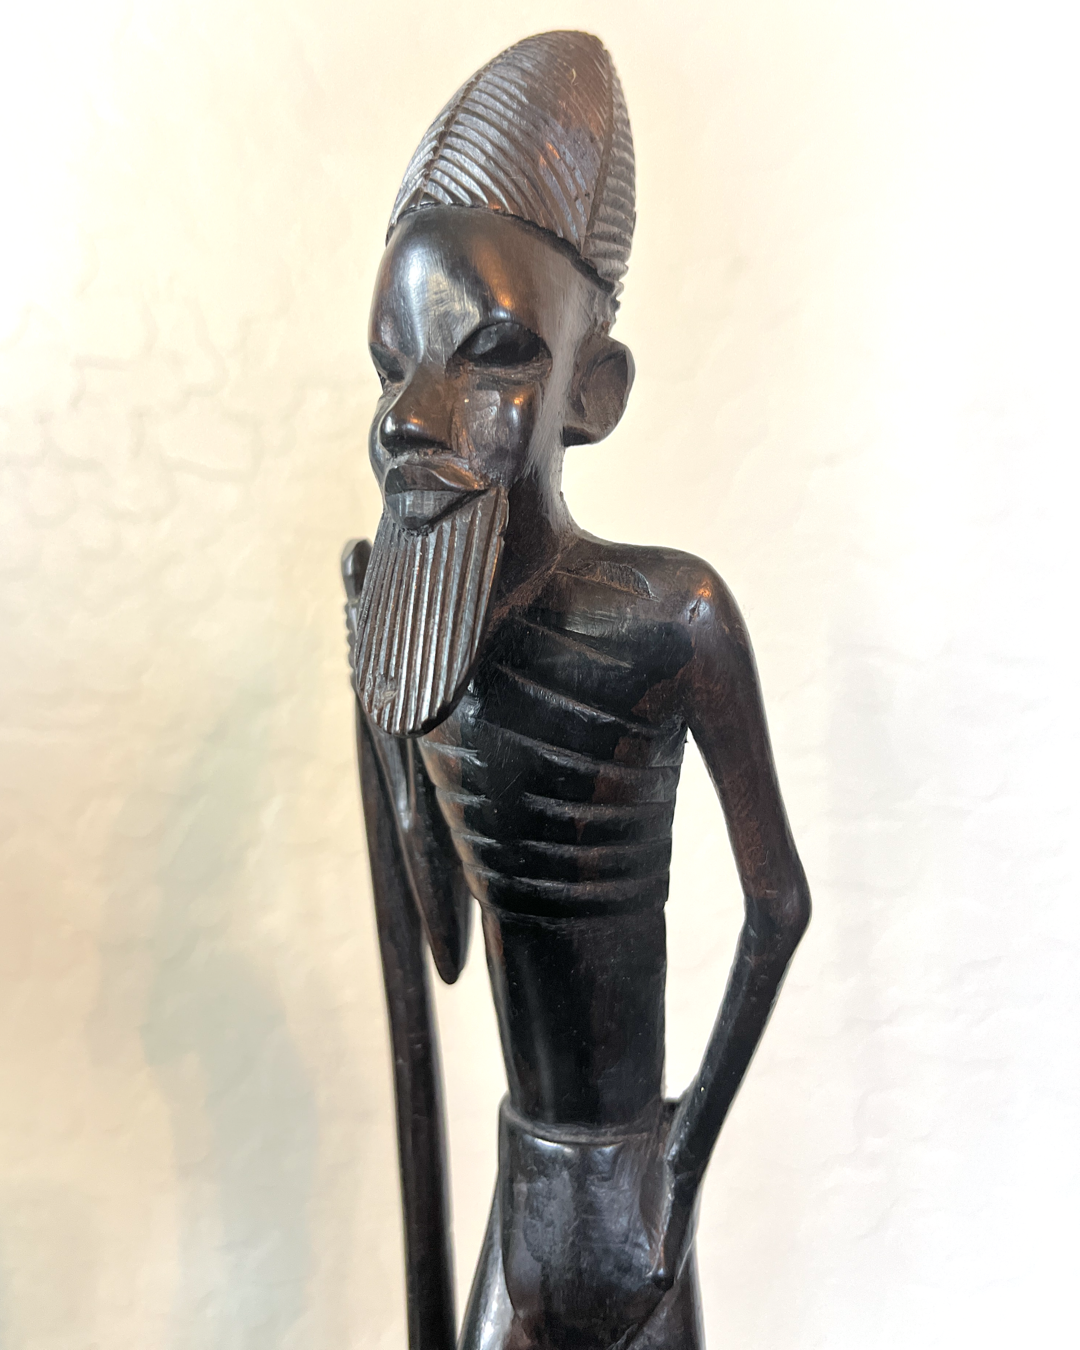 Vintage Hand Carved African Wooden Figures - Fertility Girl and Elder Man